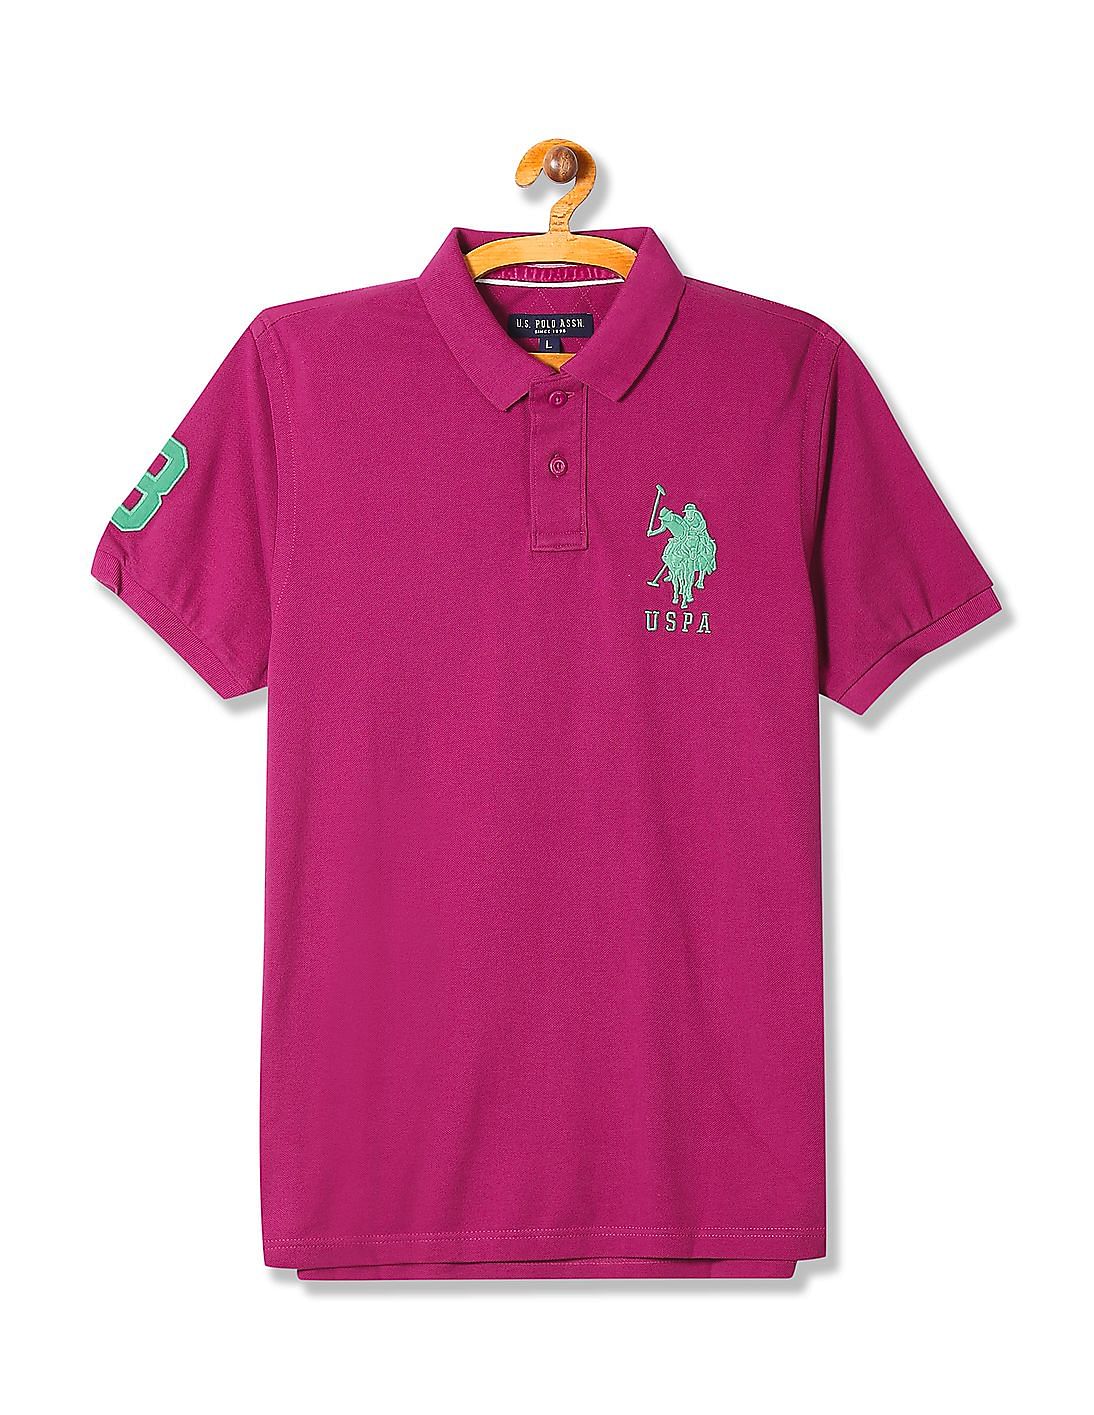 Buy U.S. Polo Assn. Short Sleeve Appliqued Polo Shirt - NNNOW.com